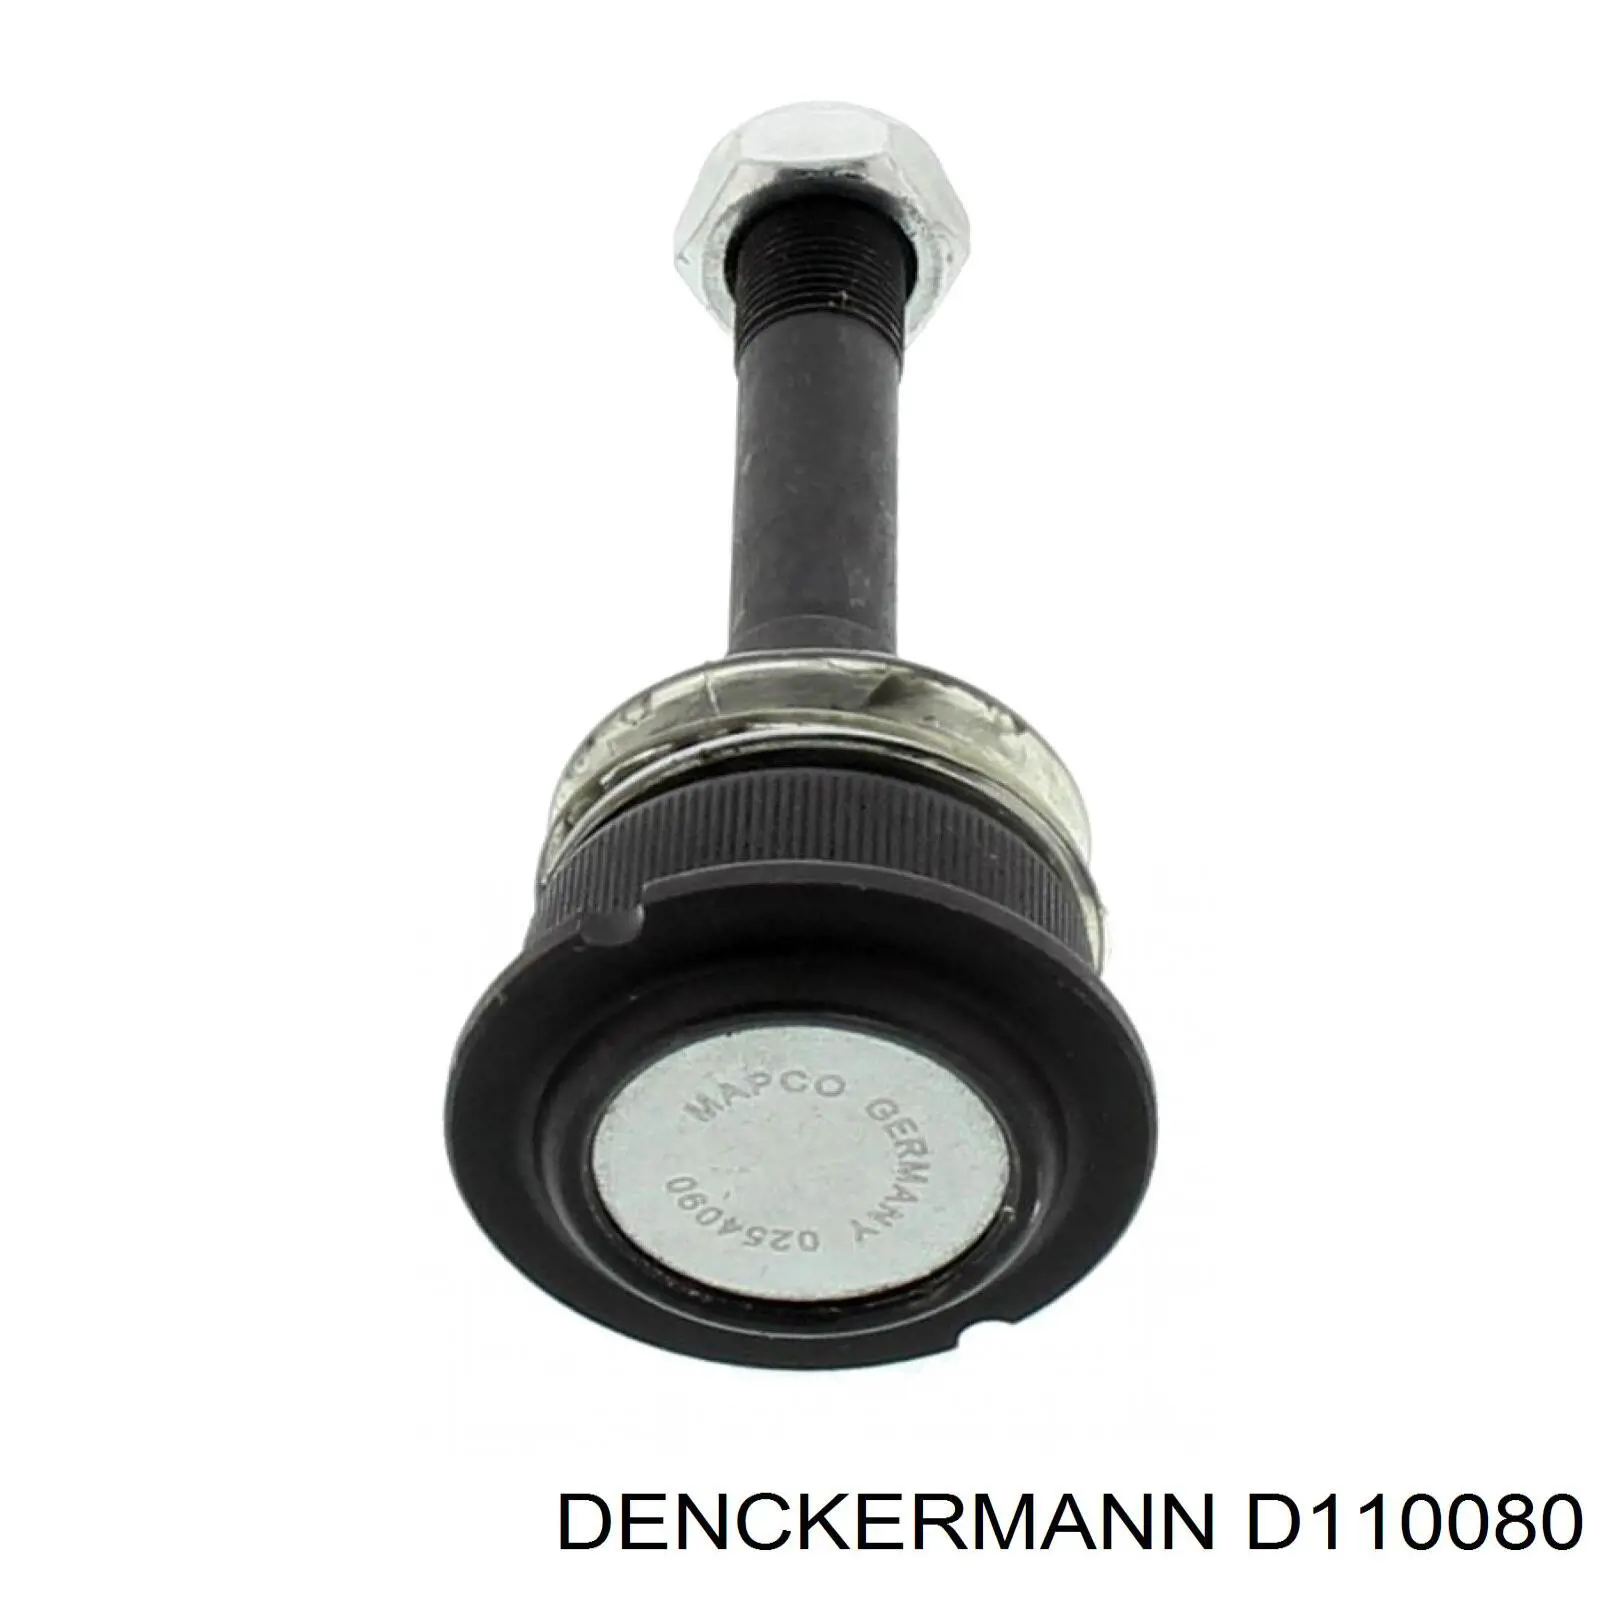 D110080 Denckermann rótula de suspensión inferior